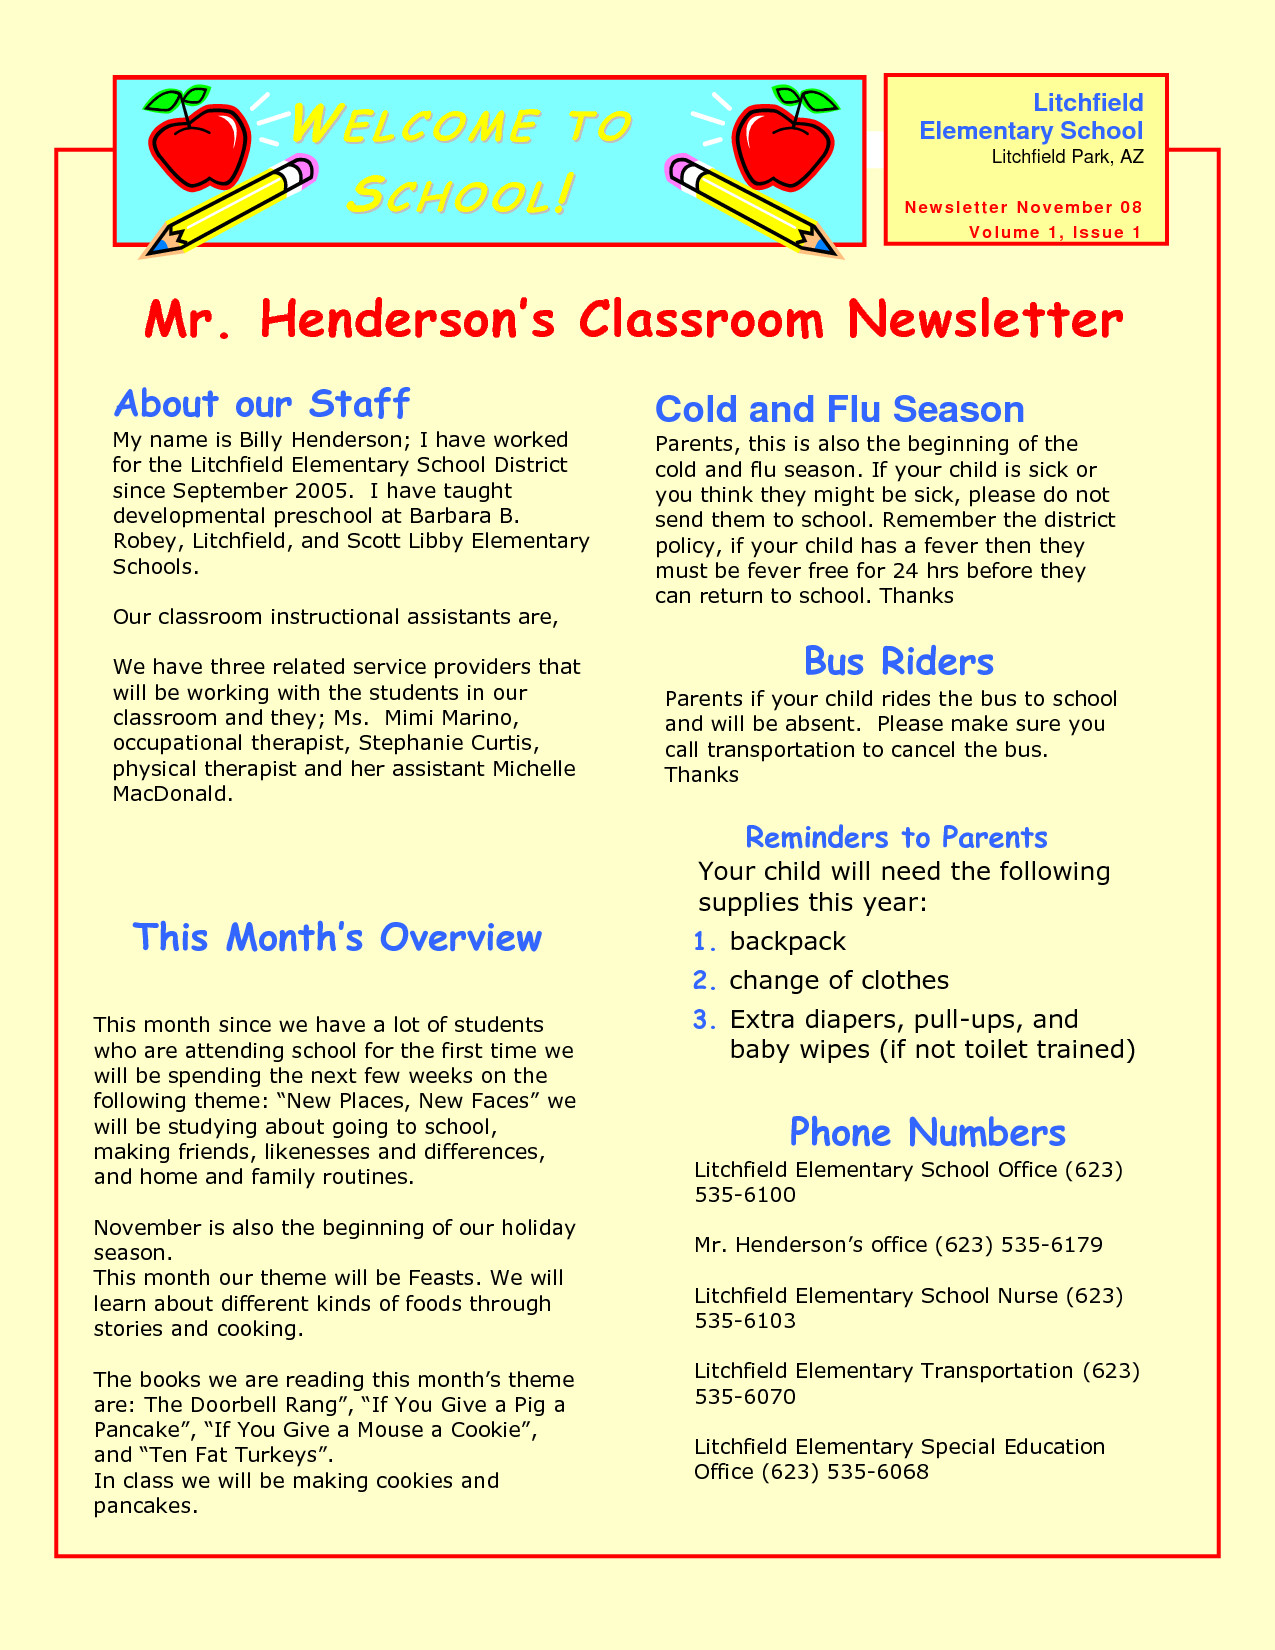 Newsletter Templates for Preschool Preschool Newsletter Samples